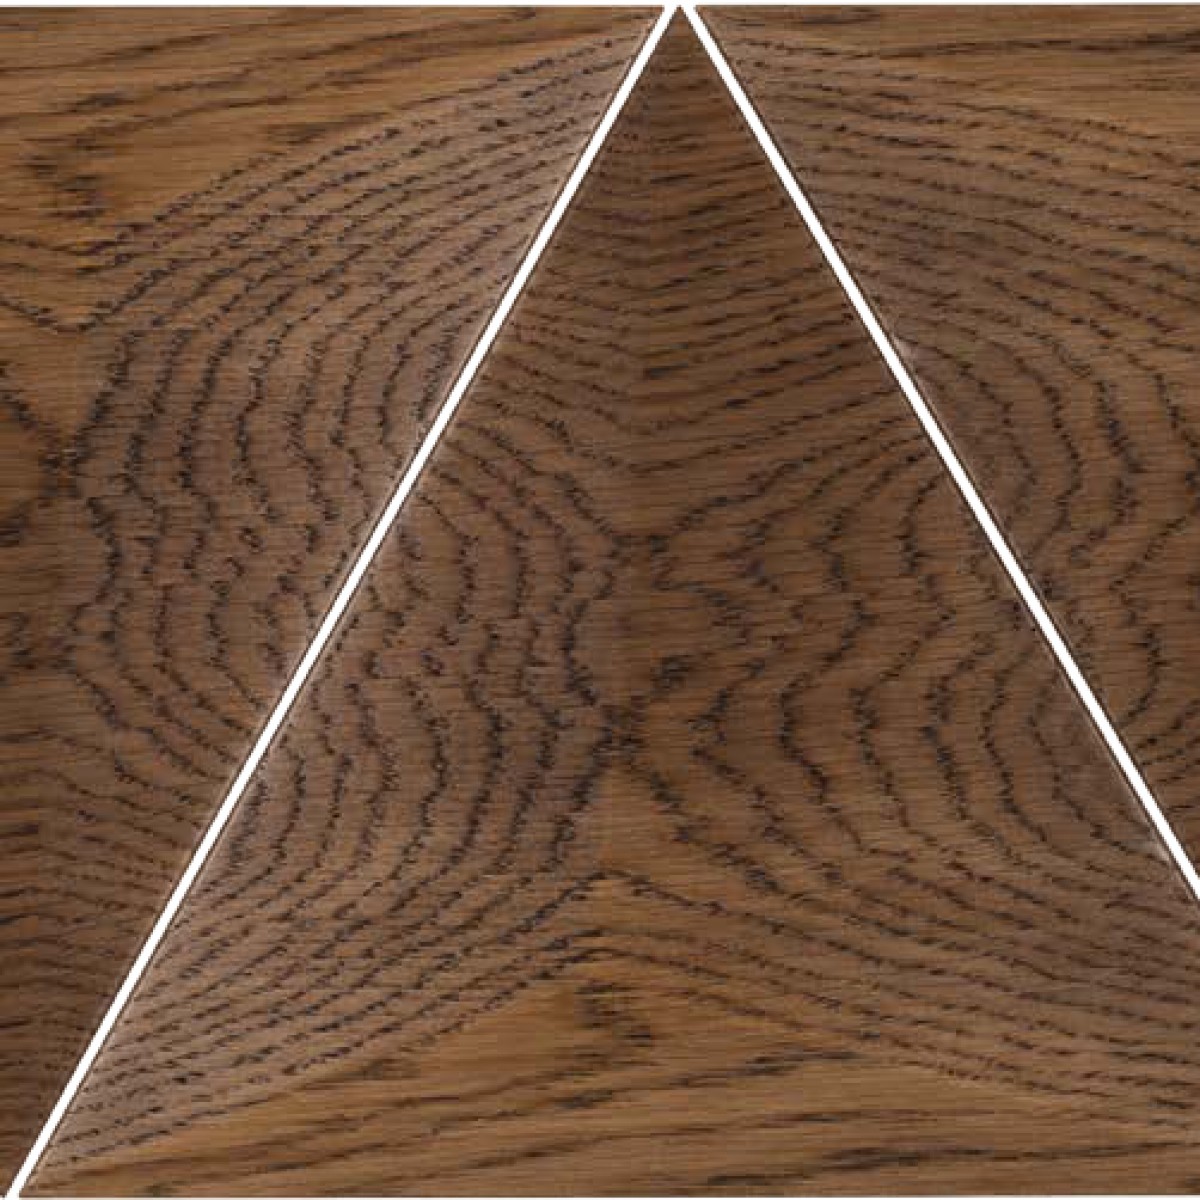 Panouri decorative 3D din lemn de stejar Pyramid, Panouri decorative din lemn, Panouri decorative 